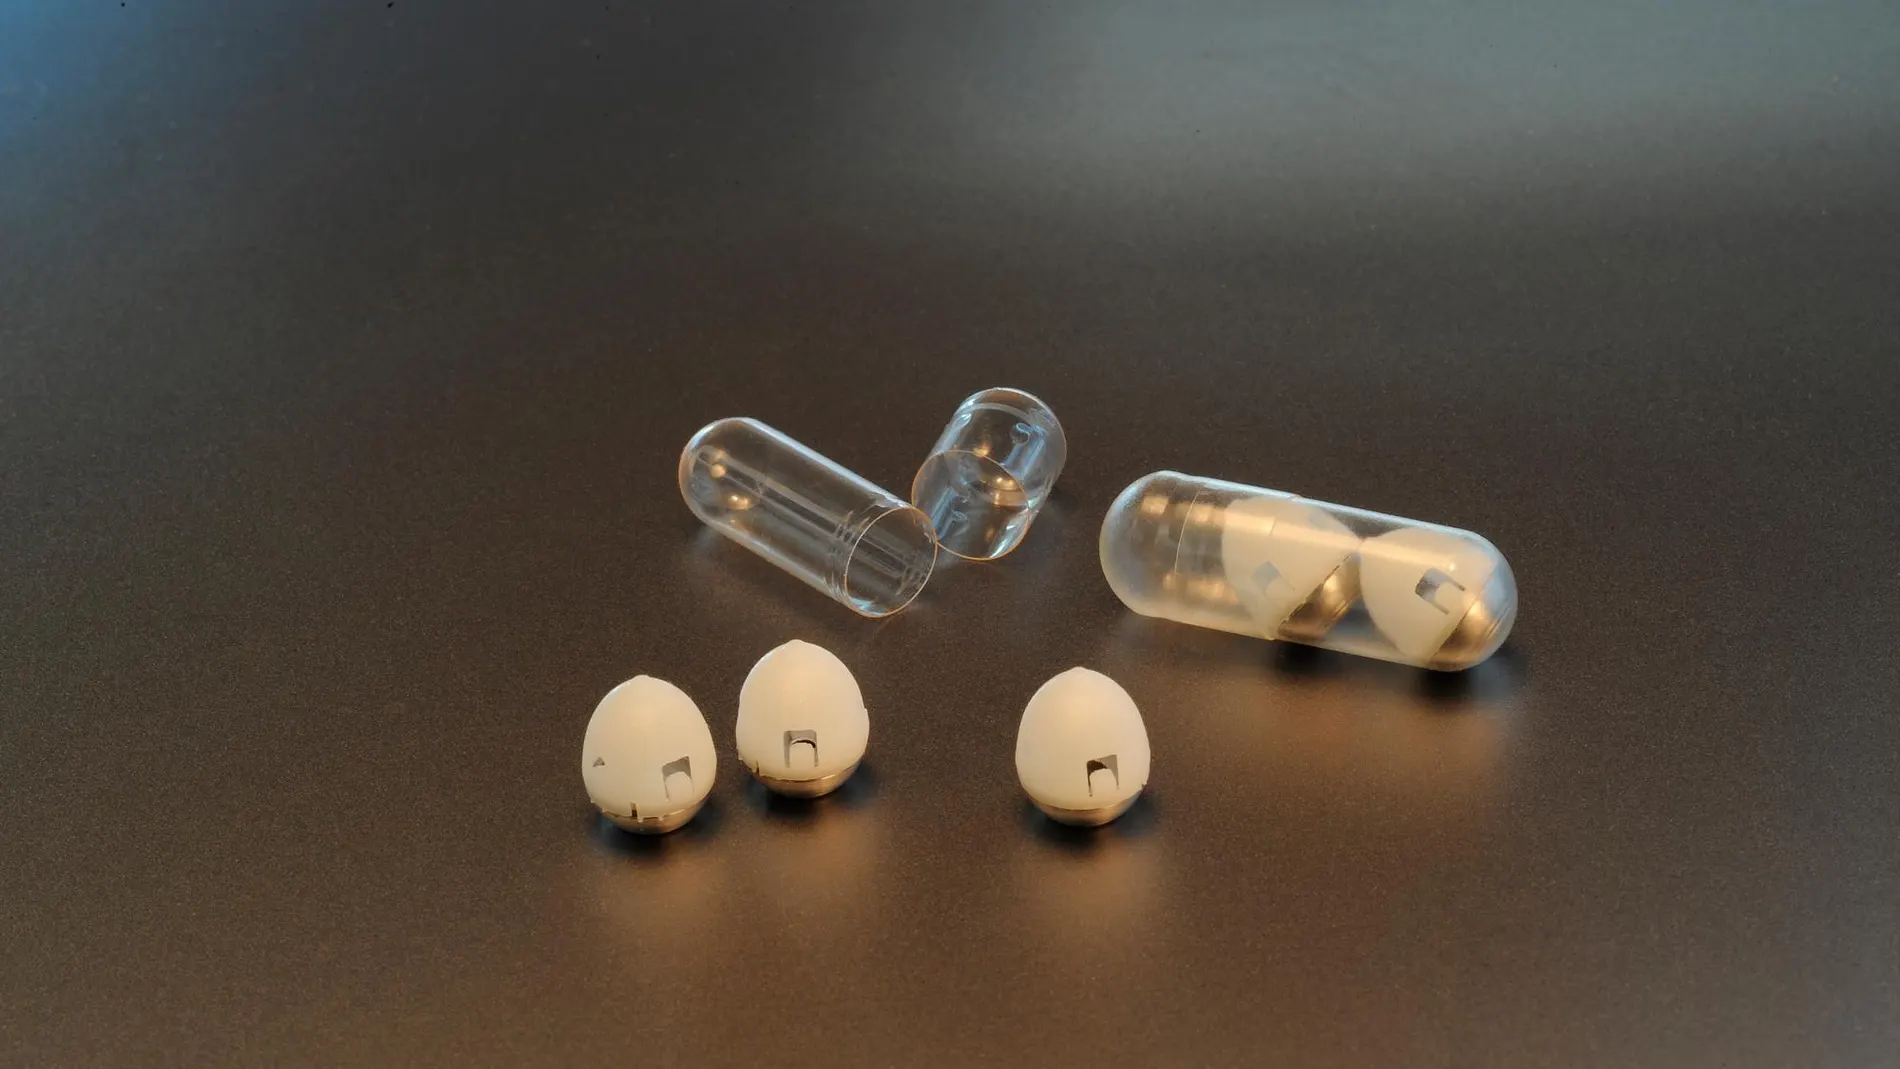 La cápsula de medicamento que podría usarse para administrar dosis orales de insulina